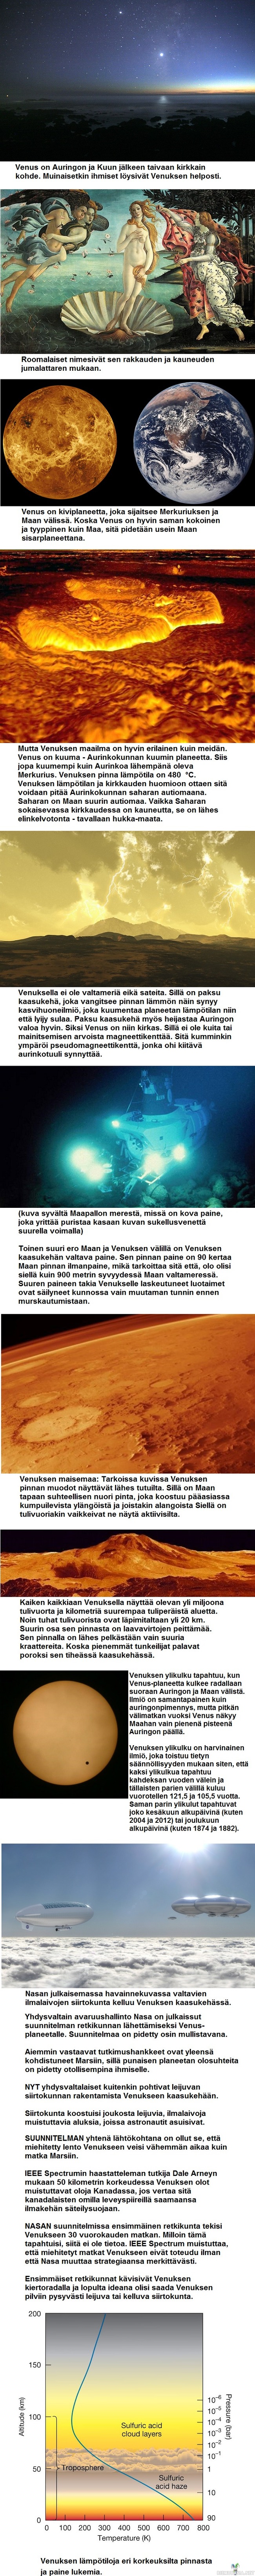 Venus special - Venukseen on tehty kaikista planeetoista eniten miehittämättömiä lentoja. Ensimmäinen Venuksen ohilennon tehnyt avaruusluotain, Neuvostoliiton Venera 1, oli myös ensimmäinen toiselle planeetalle lähetetty avaruusluotain. Yhteys luotaimeen katkesi kuitenkin ennen ohilentoa, joka tapahtui vuonna 1961. Ensimmäisen onnistuneen ohilennon teki Yhdysvaltain Mariner 2 vuonna 1962. Ensimmäinen onnistunut laskeutuminen pinnalle tapahtui 1970, kun Venera 7 -luotain lähetti tietoa takaisin Venuksen pinnalta. Se mittasi pinnan lämpötilaksi 460–480 °C. Mutta se murskautui valtavan paineen takia melko pian Venuksen pinnalla.

https://www.riemurasia.net/rtube/Tulevaisuuden-matka-Venukselle-kavelya-Venuksen-pinnalla/95292